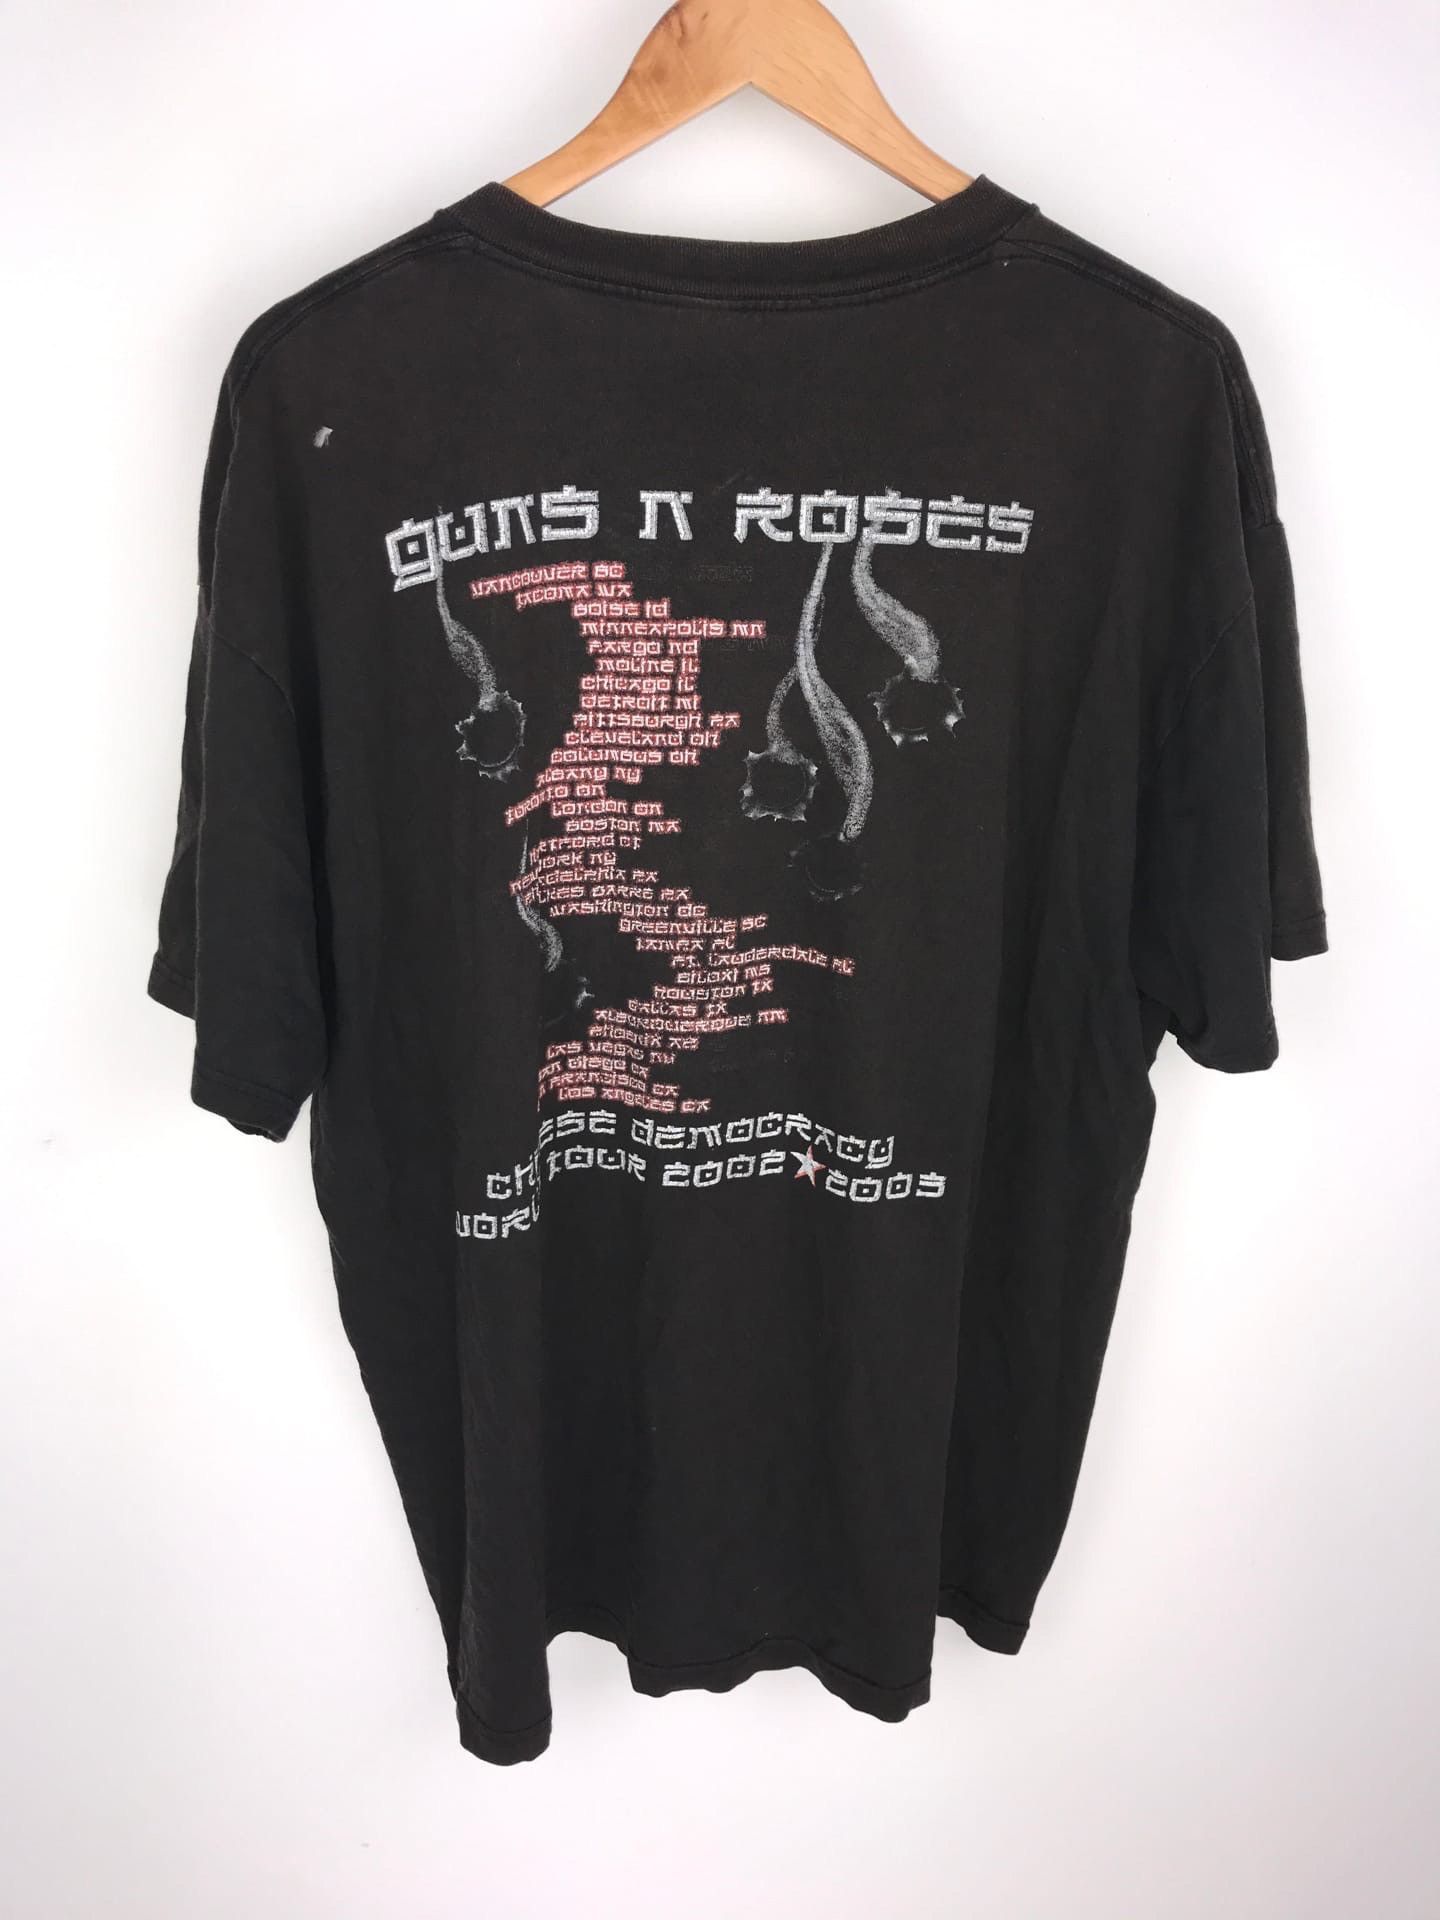 ガンズアンドローゼズ 2002 CHINESE DEMOCRACYツアーTシャツ